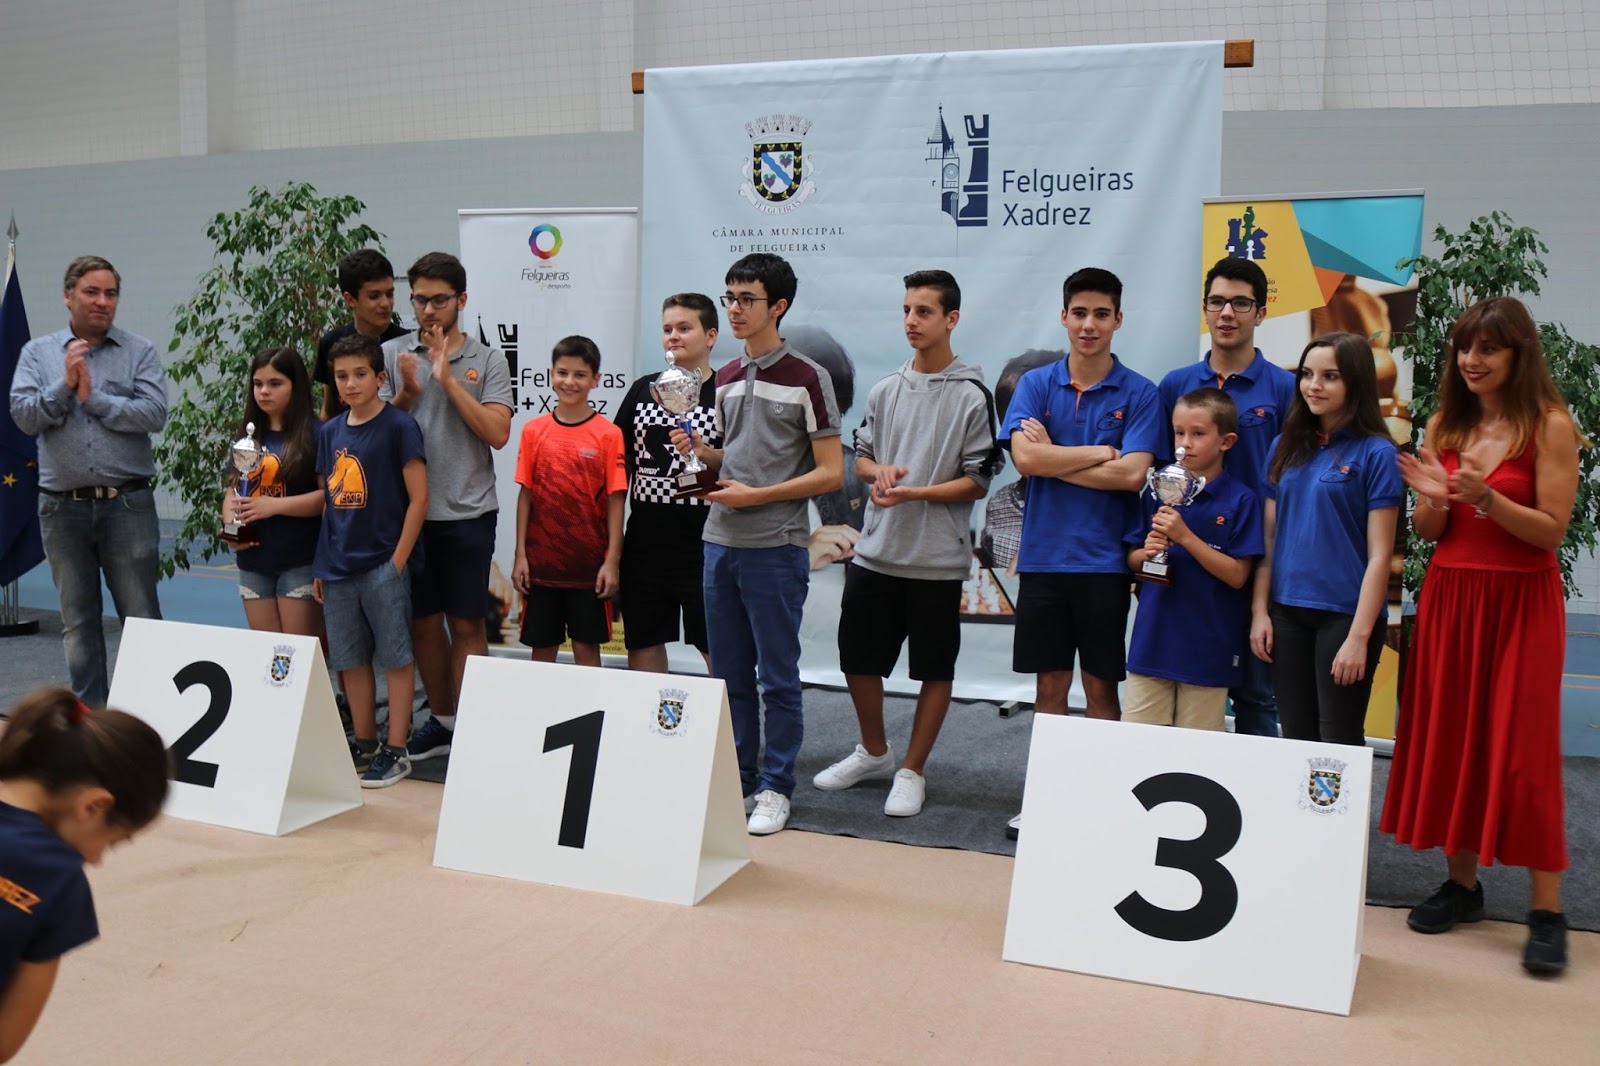 1º Campeonato Felgueiras Xadrez - Câmara Municipal de Felgueiras